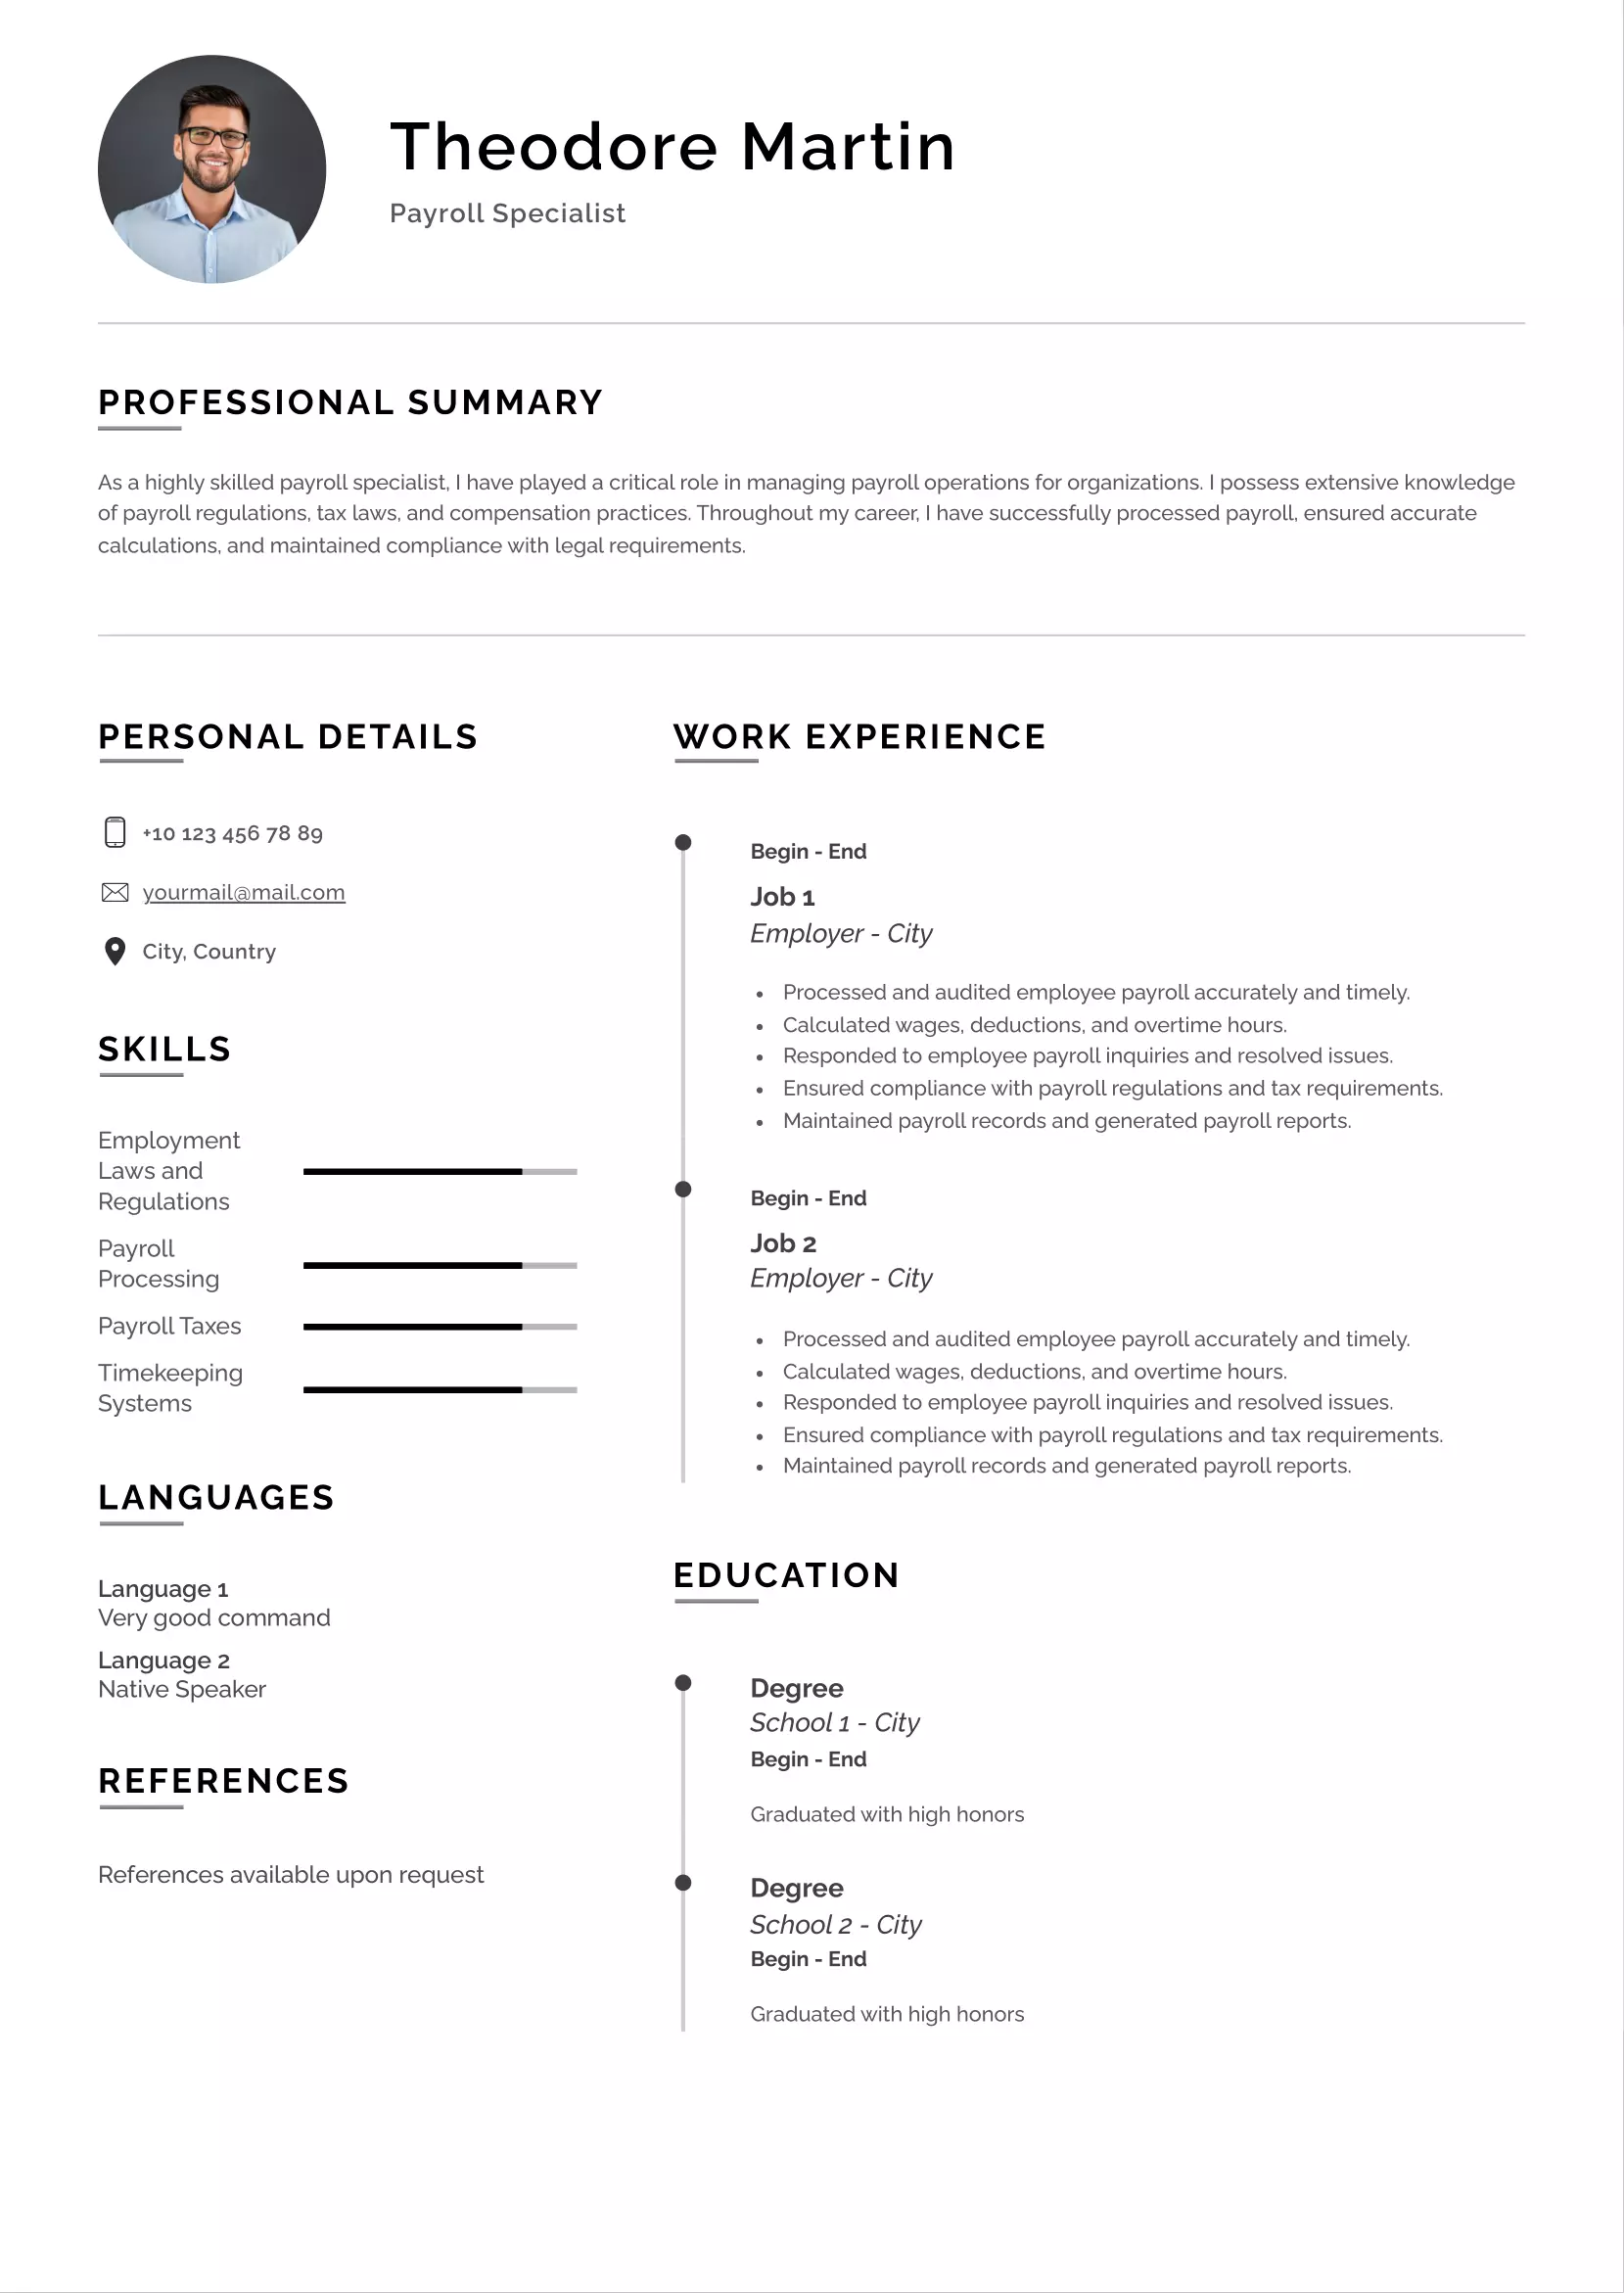 Payroll specialist resume CV